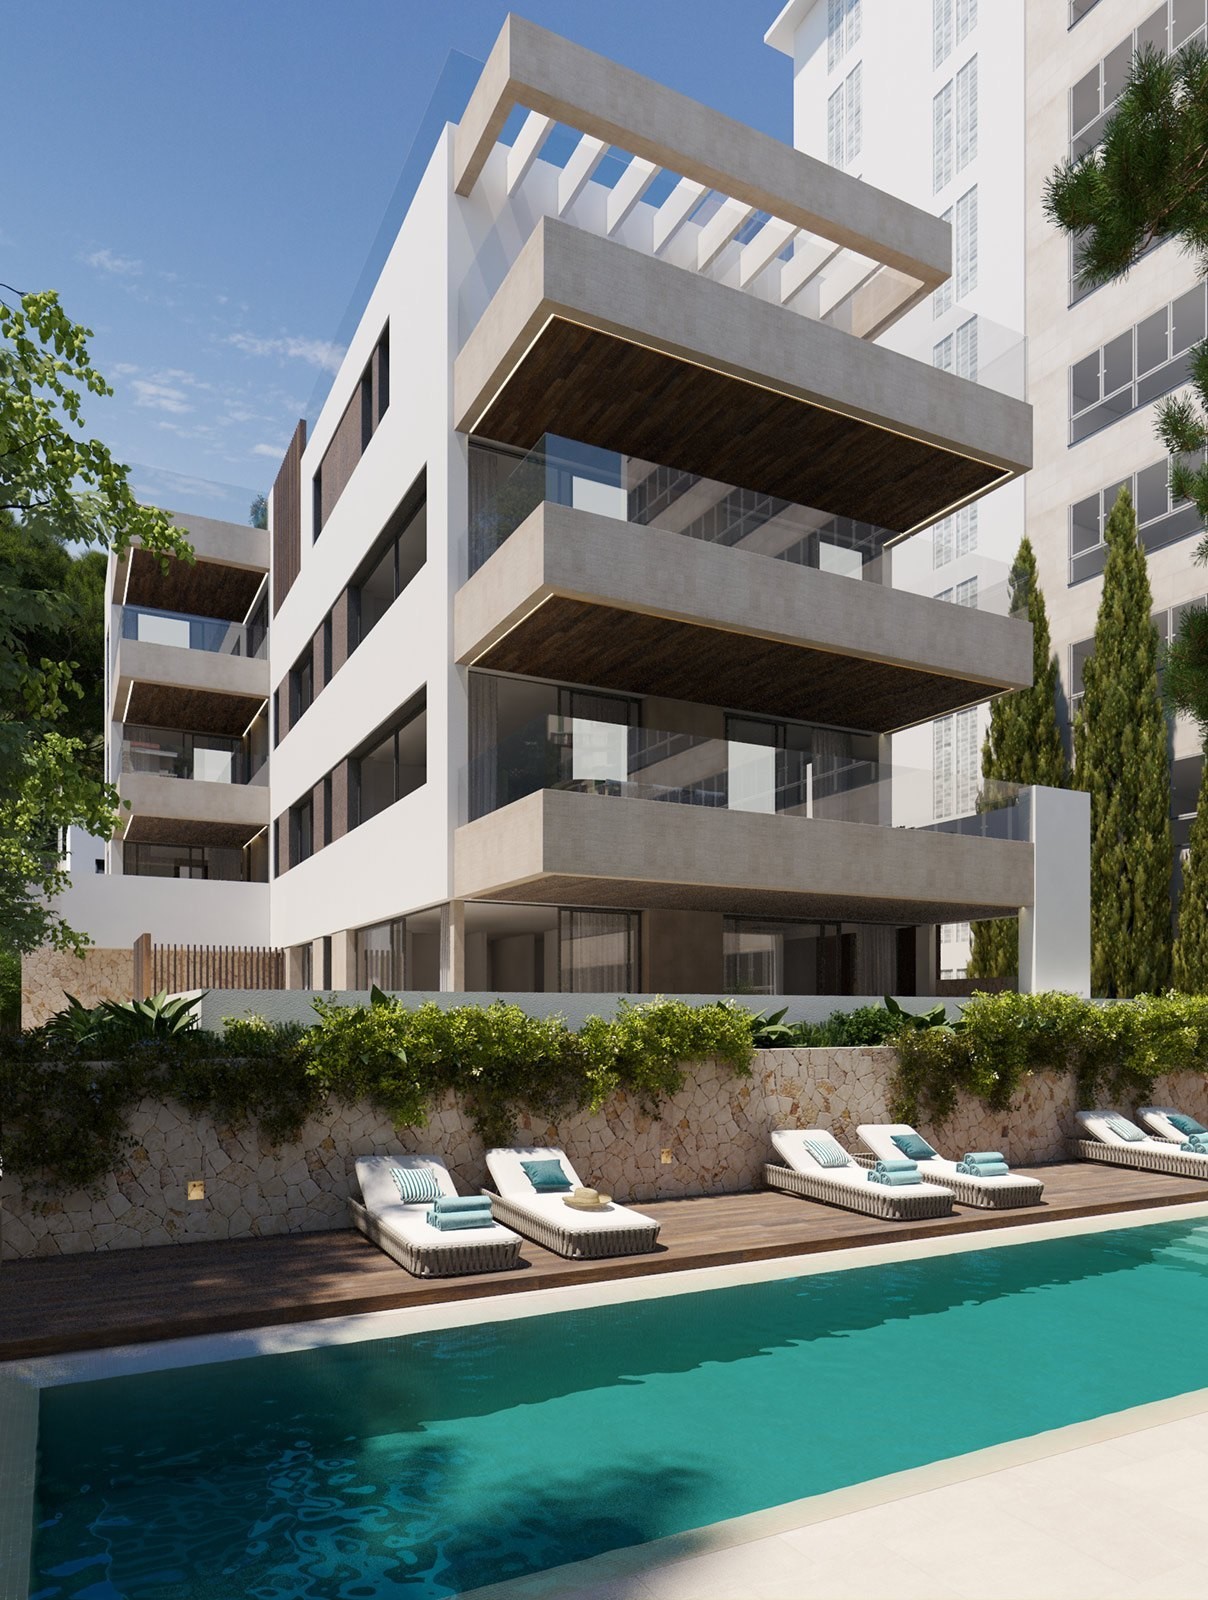 Piso ajardinado de nueva construcción con gran terraza y piscina comunitaria, Palma